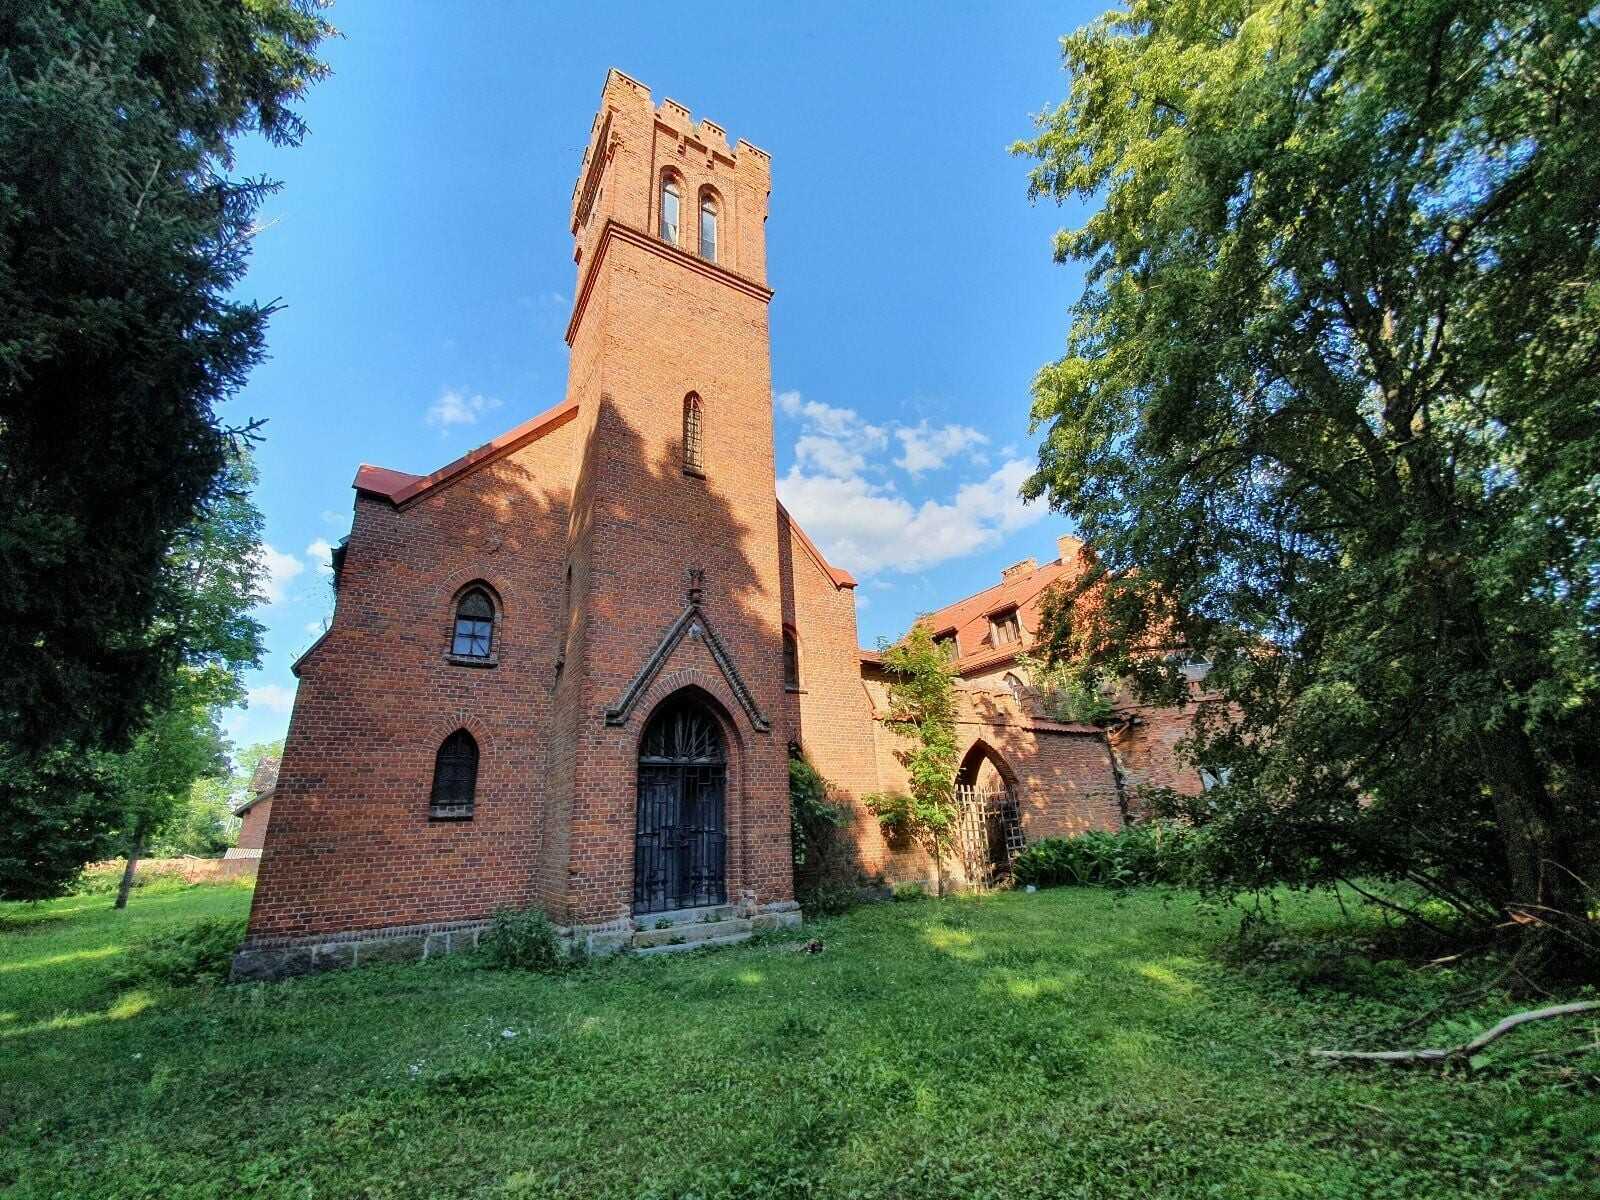 Zdjęcia Kościółek wraz z zabudową z zamkową - OPALENIEC (Flammberg)